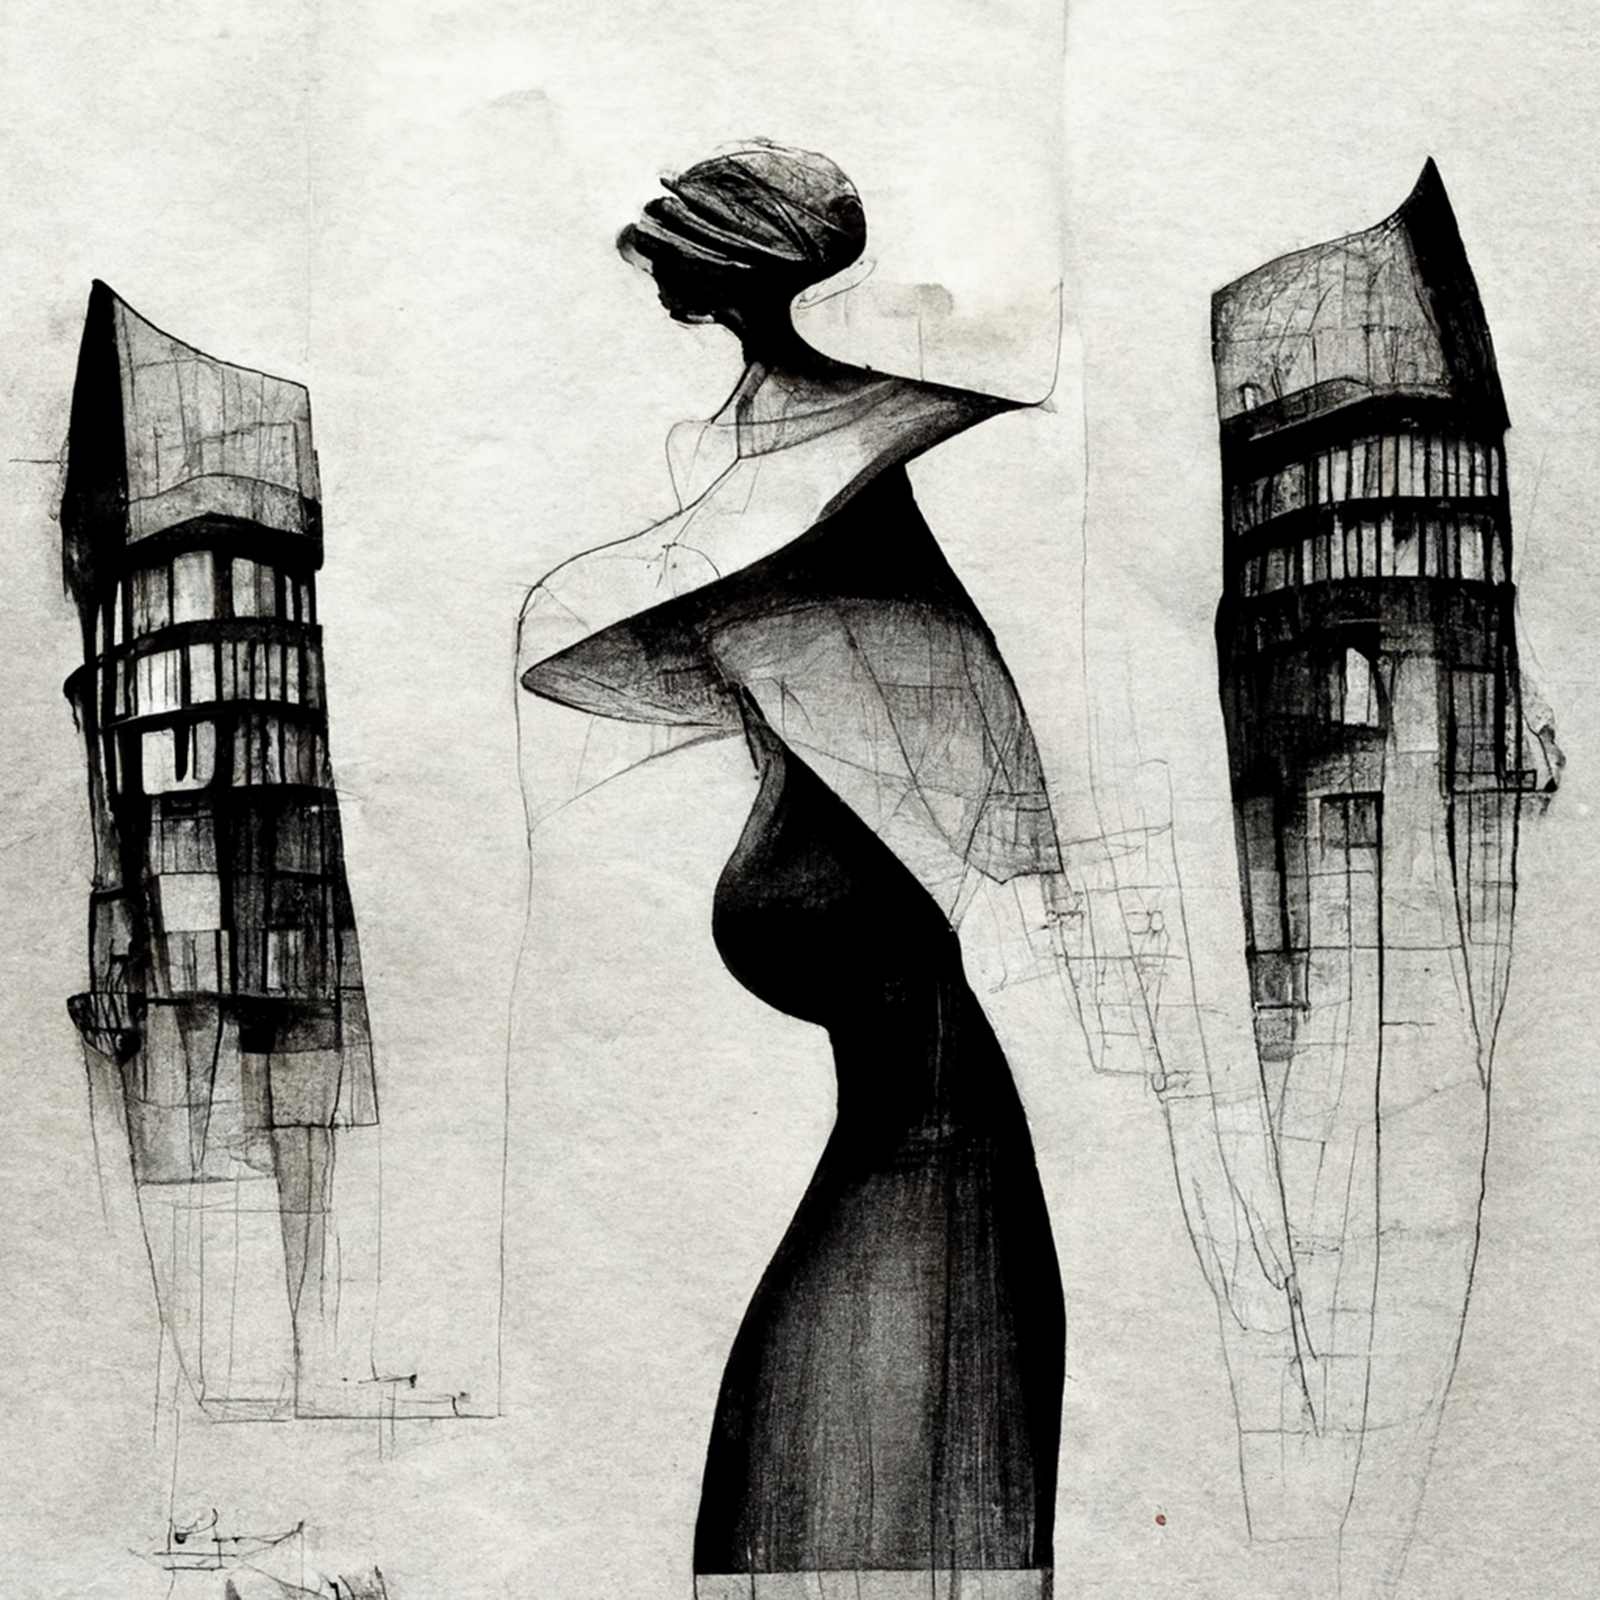 Archisearch Η Διάσταση του Γυναικείου Φύλου στην Αρχιτεκτονική | Ερευνητική εργασία από την Ειρήνη Μιχαέλα Σαπουνά